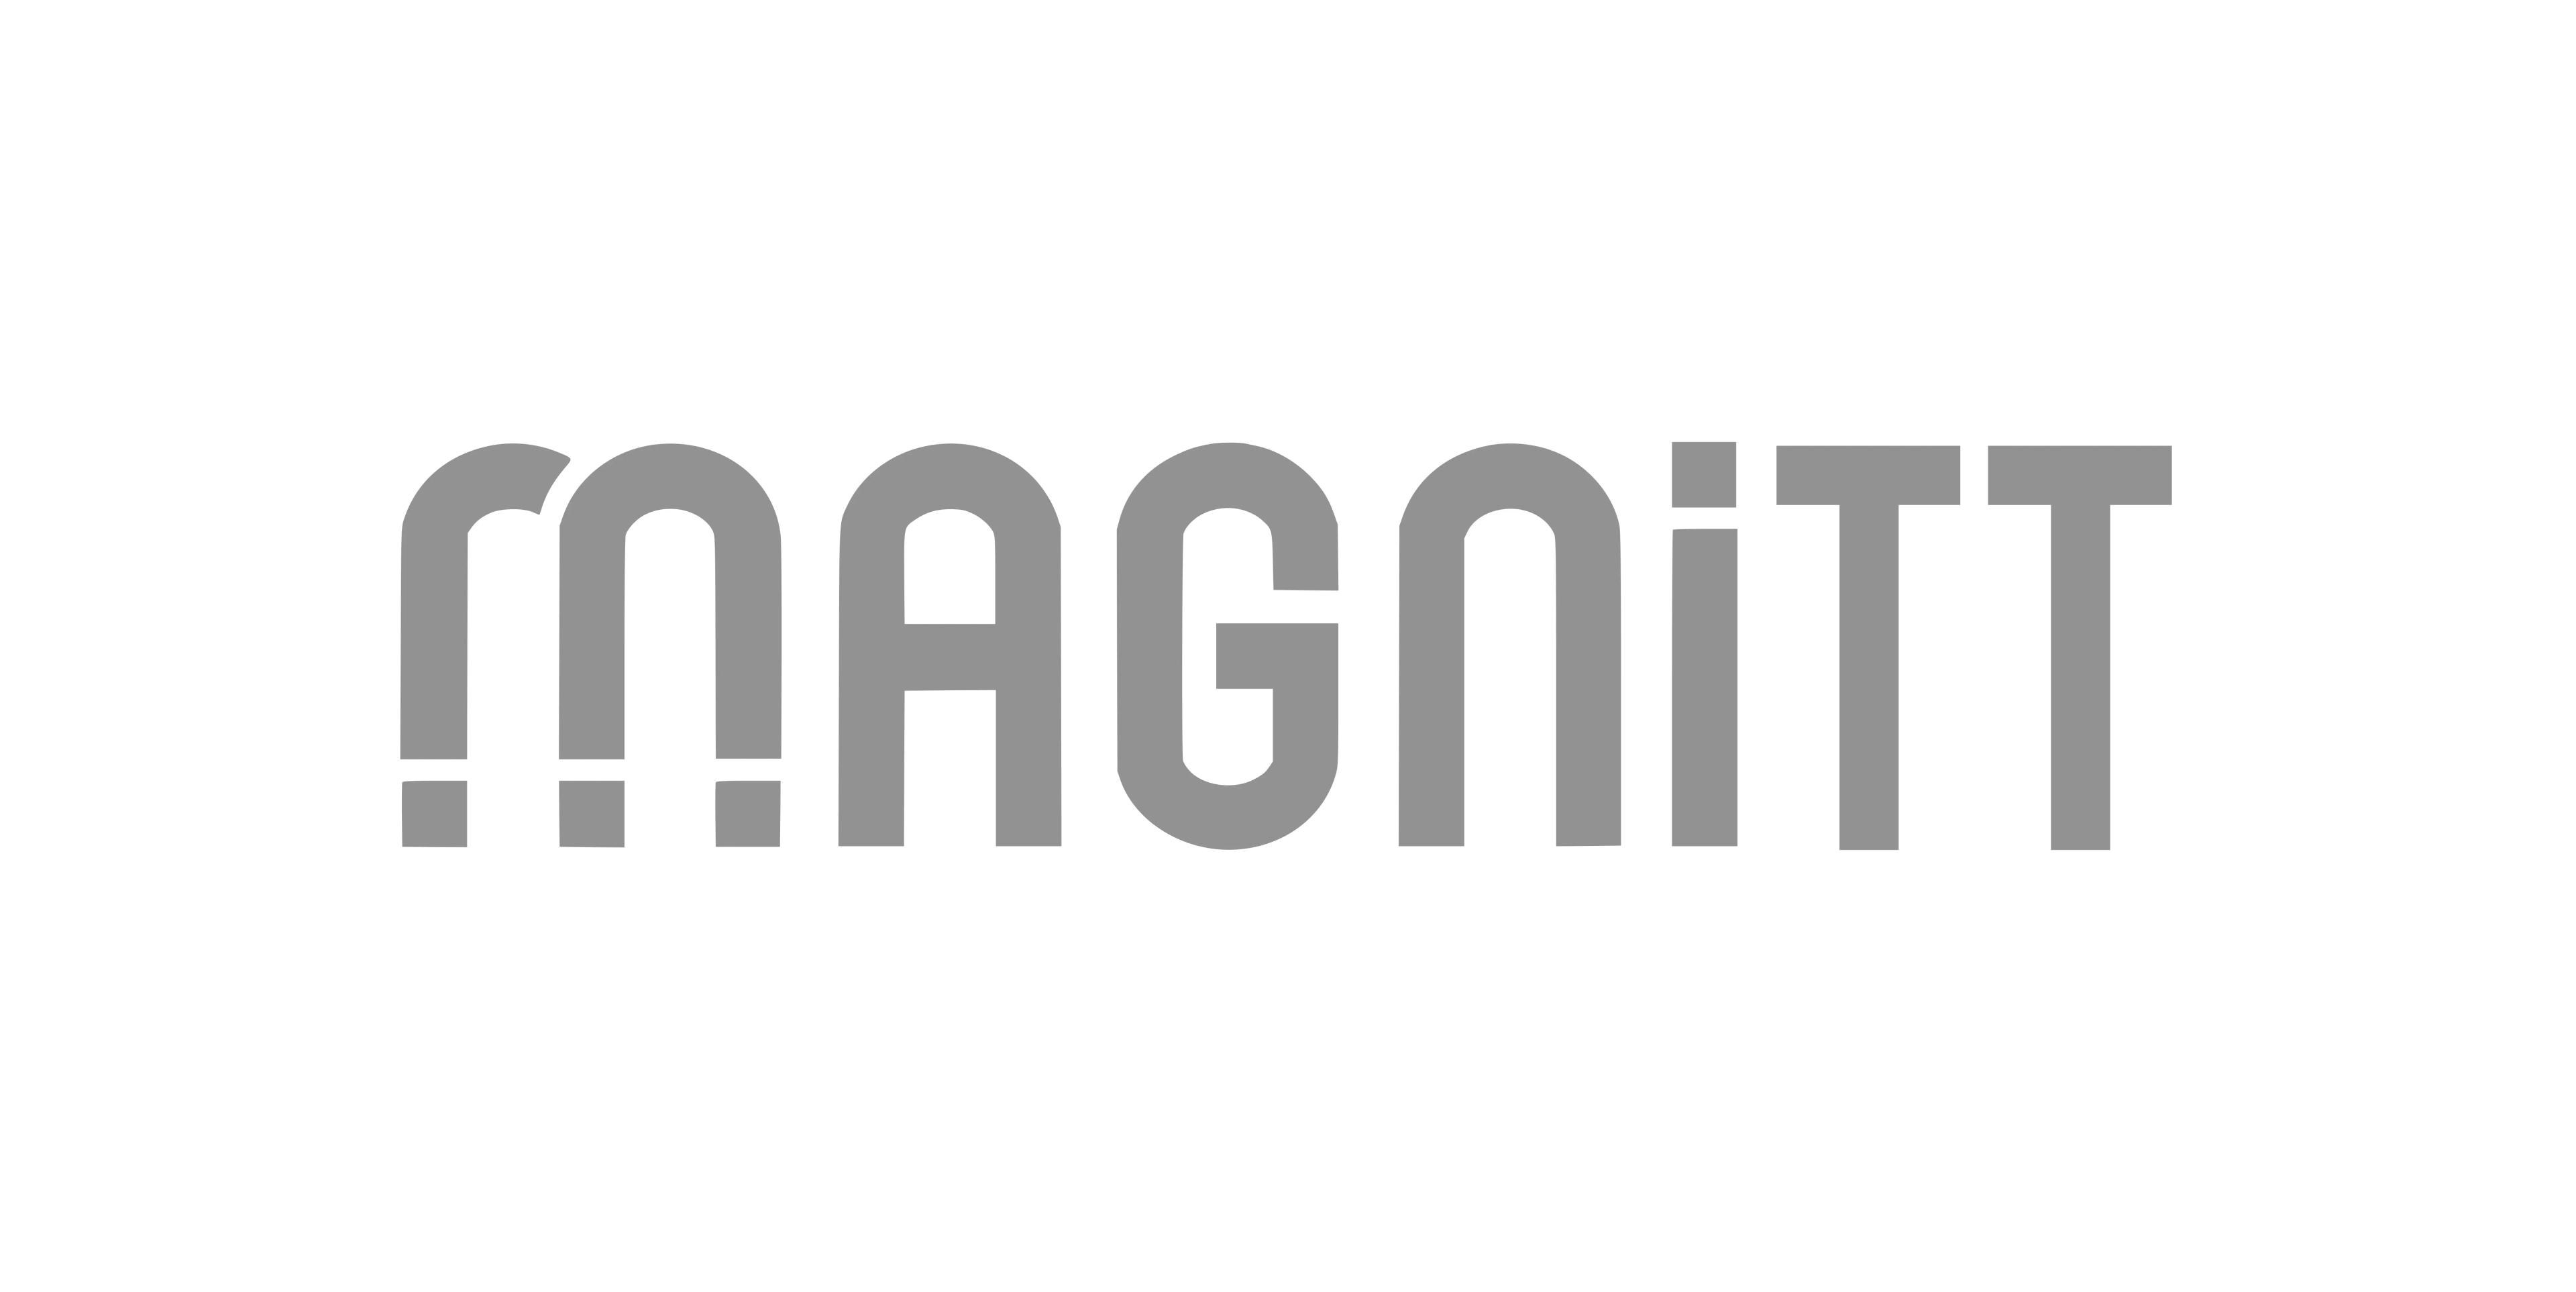 Magnitt